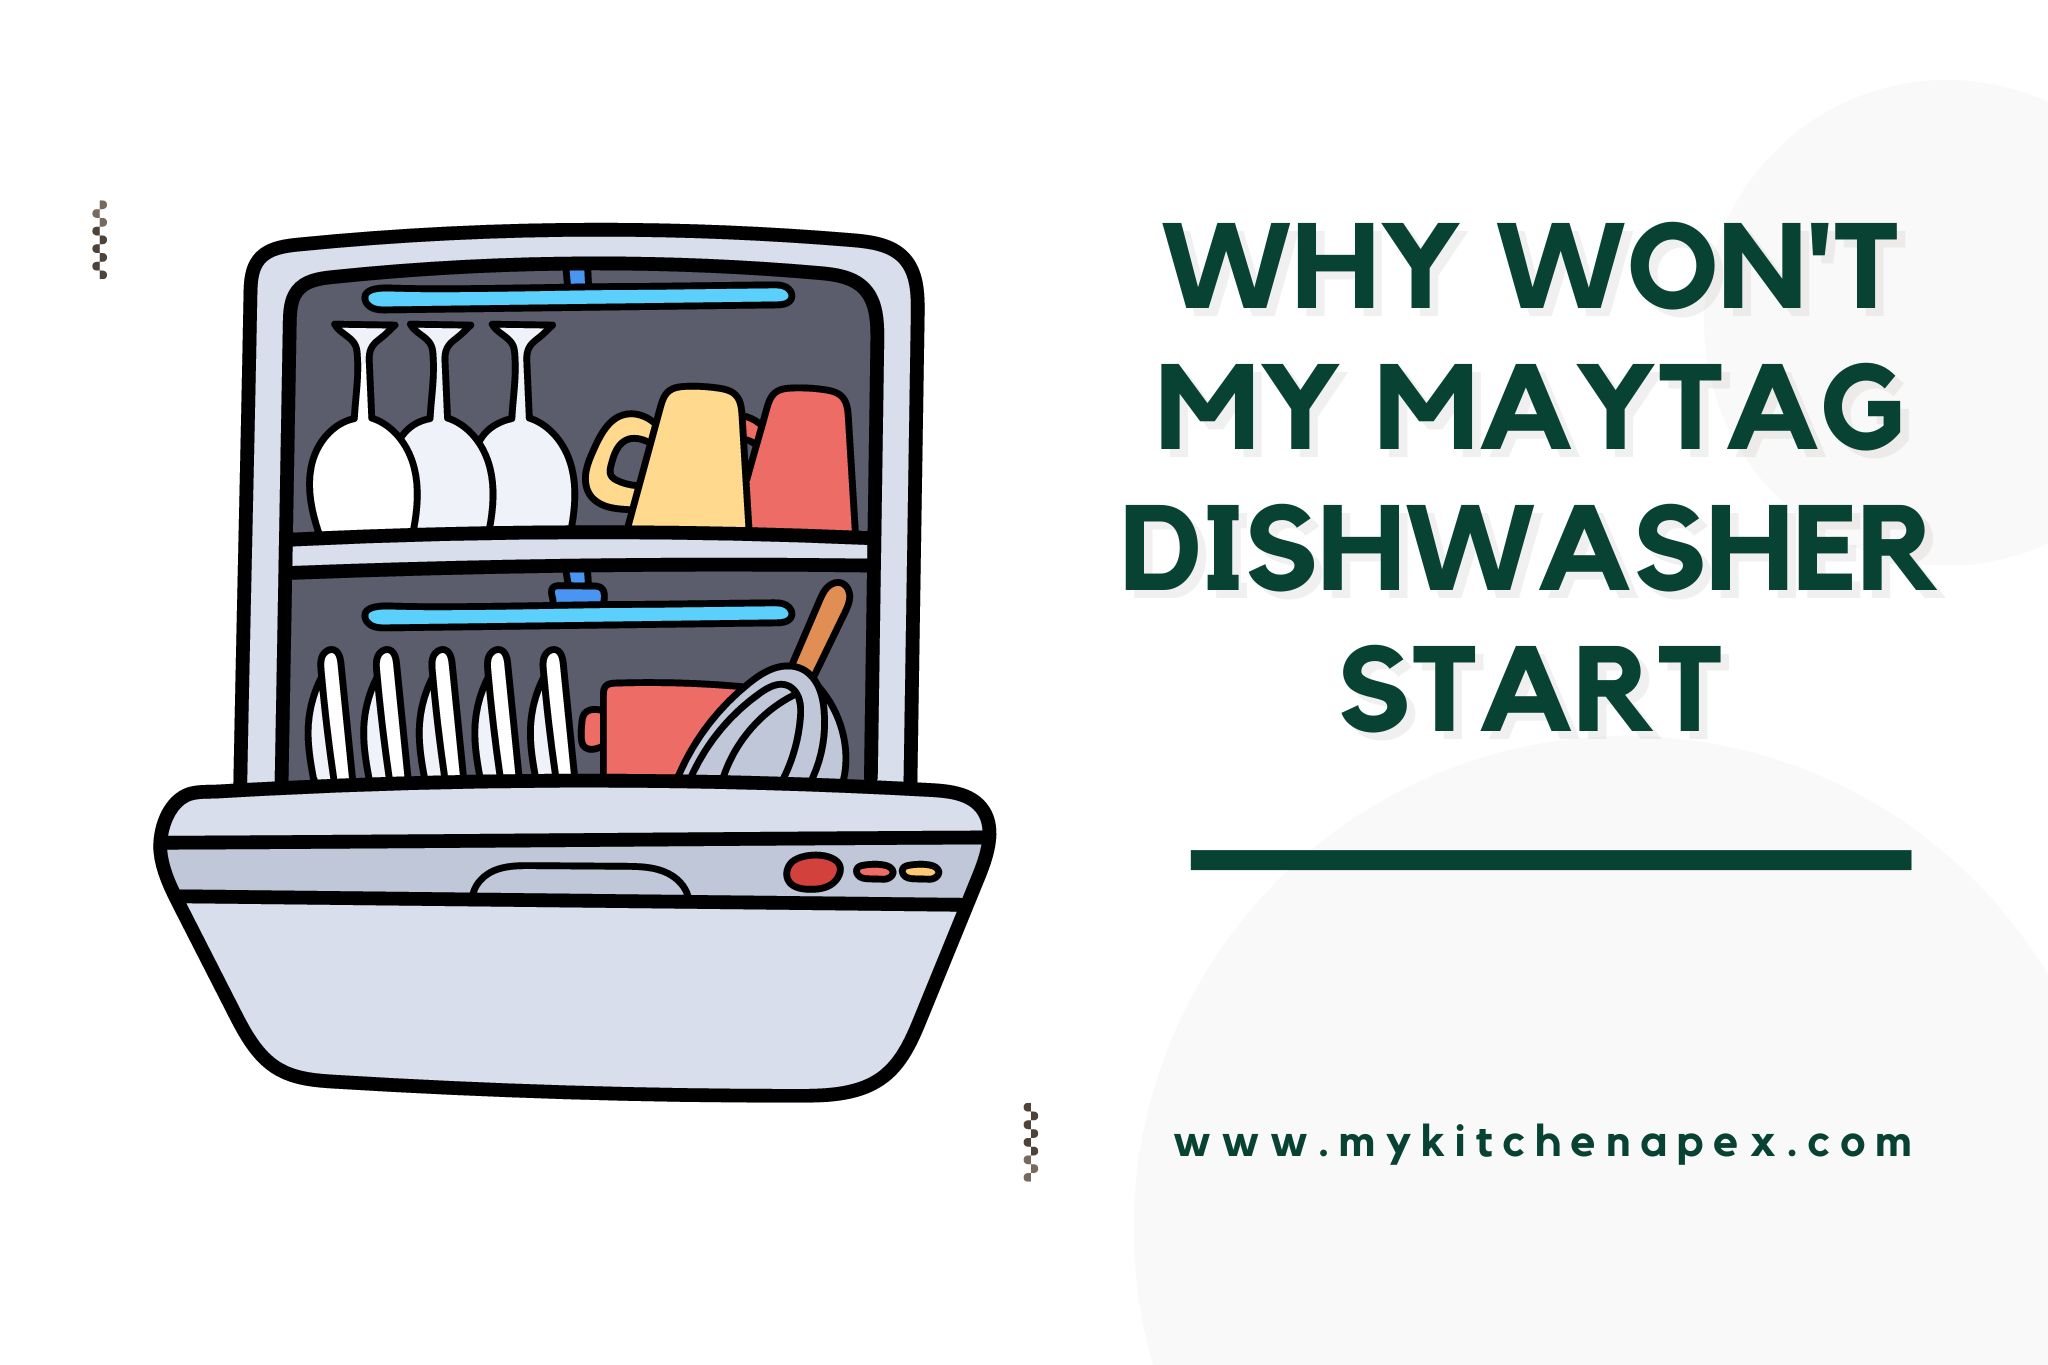 why won't my maytag dishwasher start